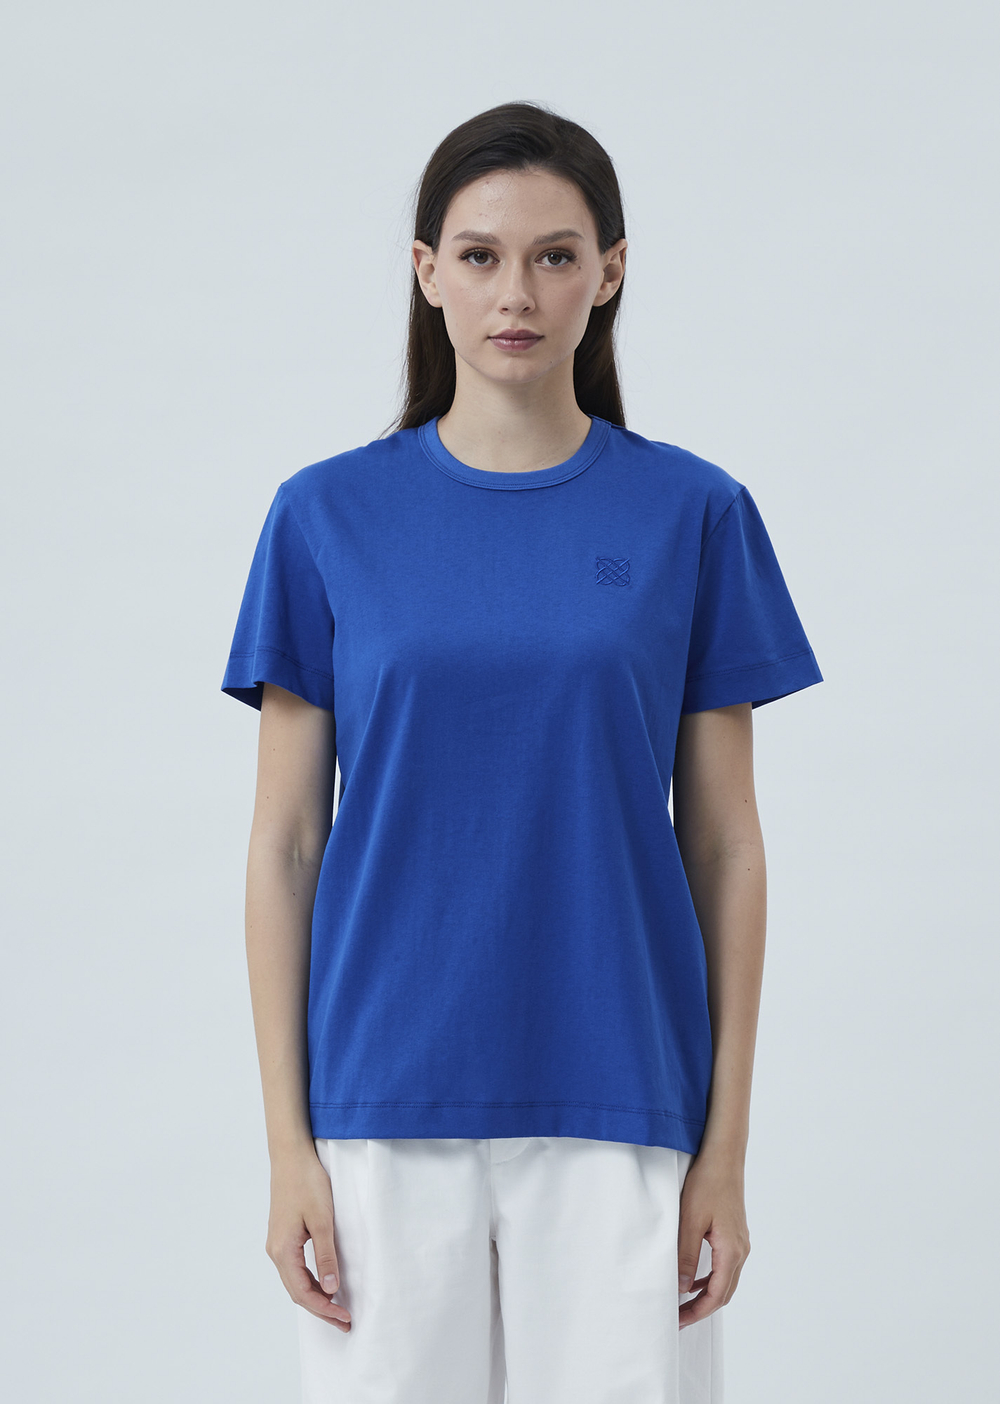 Женская футболка с вышивкой синий р.S